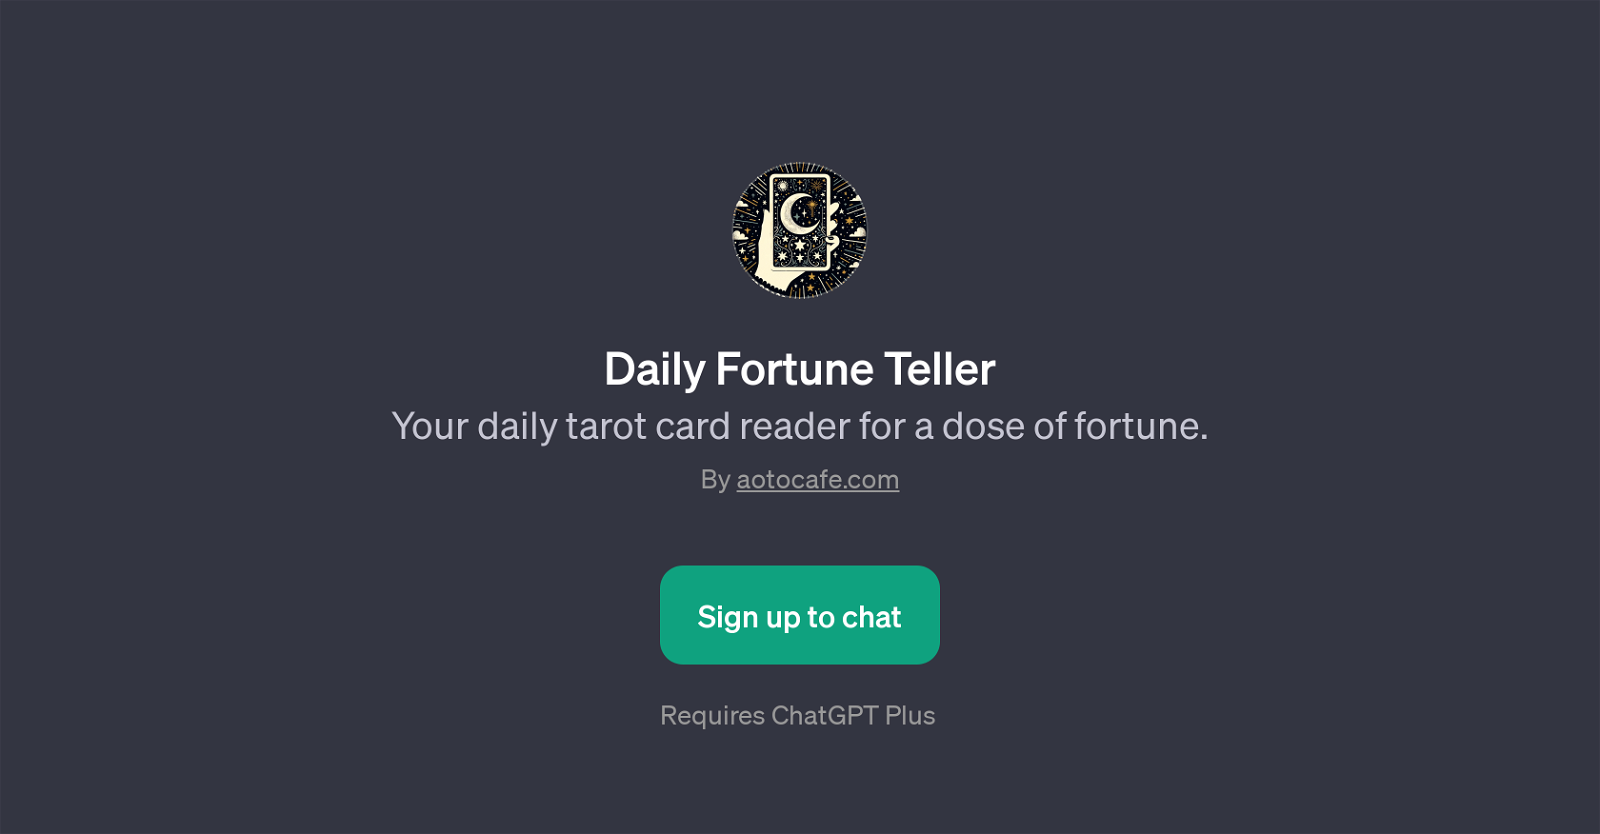 Daily Fortune Teller website